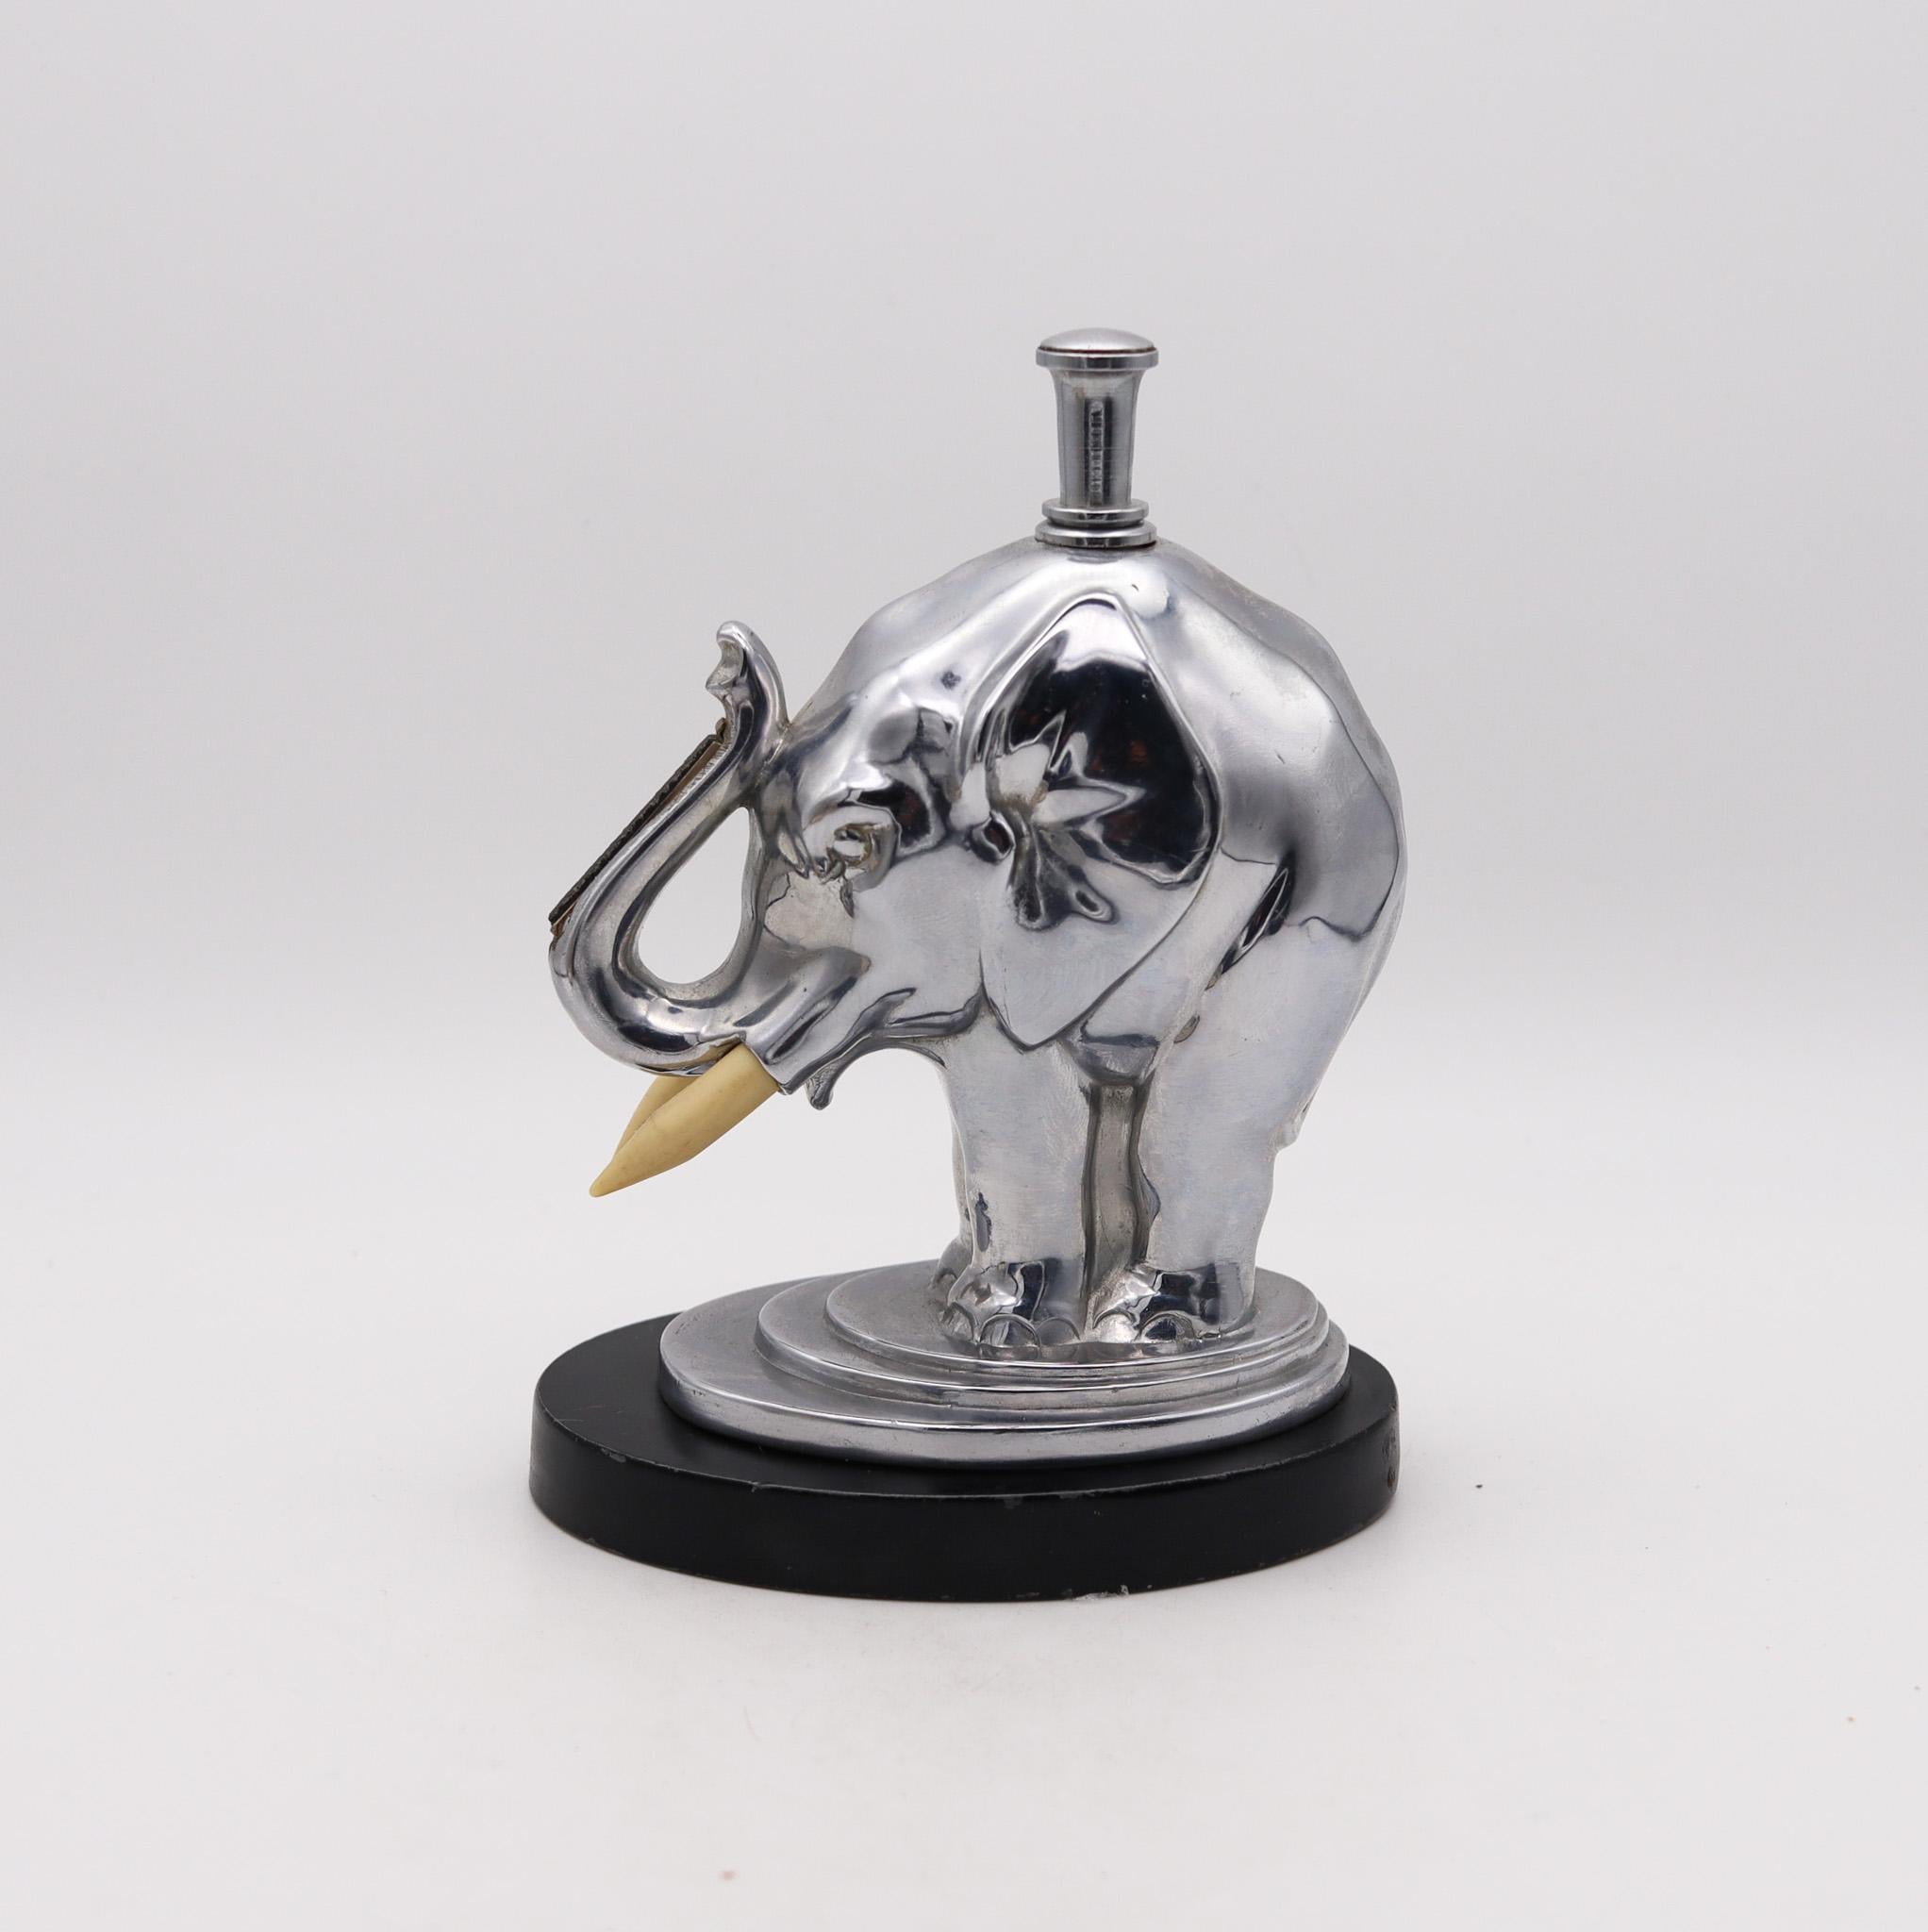 Desk Elephant Striker Feuerzeug entworfen von Ronson.

Die von Ronson hergestellten Striker-Feuerzeuge sind unter Sammlern berühmt. Diese extrem seltene Schreibtisch Striker Feuerzeug wurde in New Jersey Vereinigten Staaten von The Art Metal Works